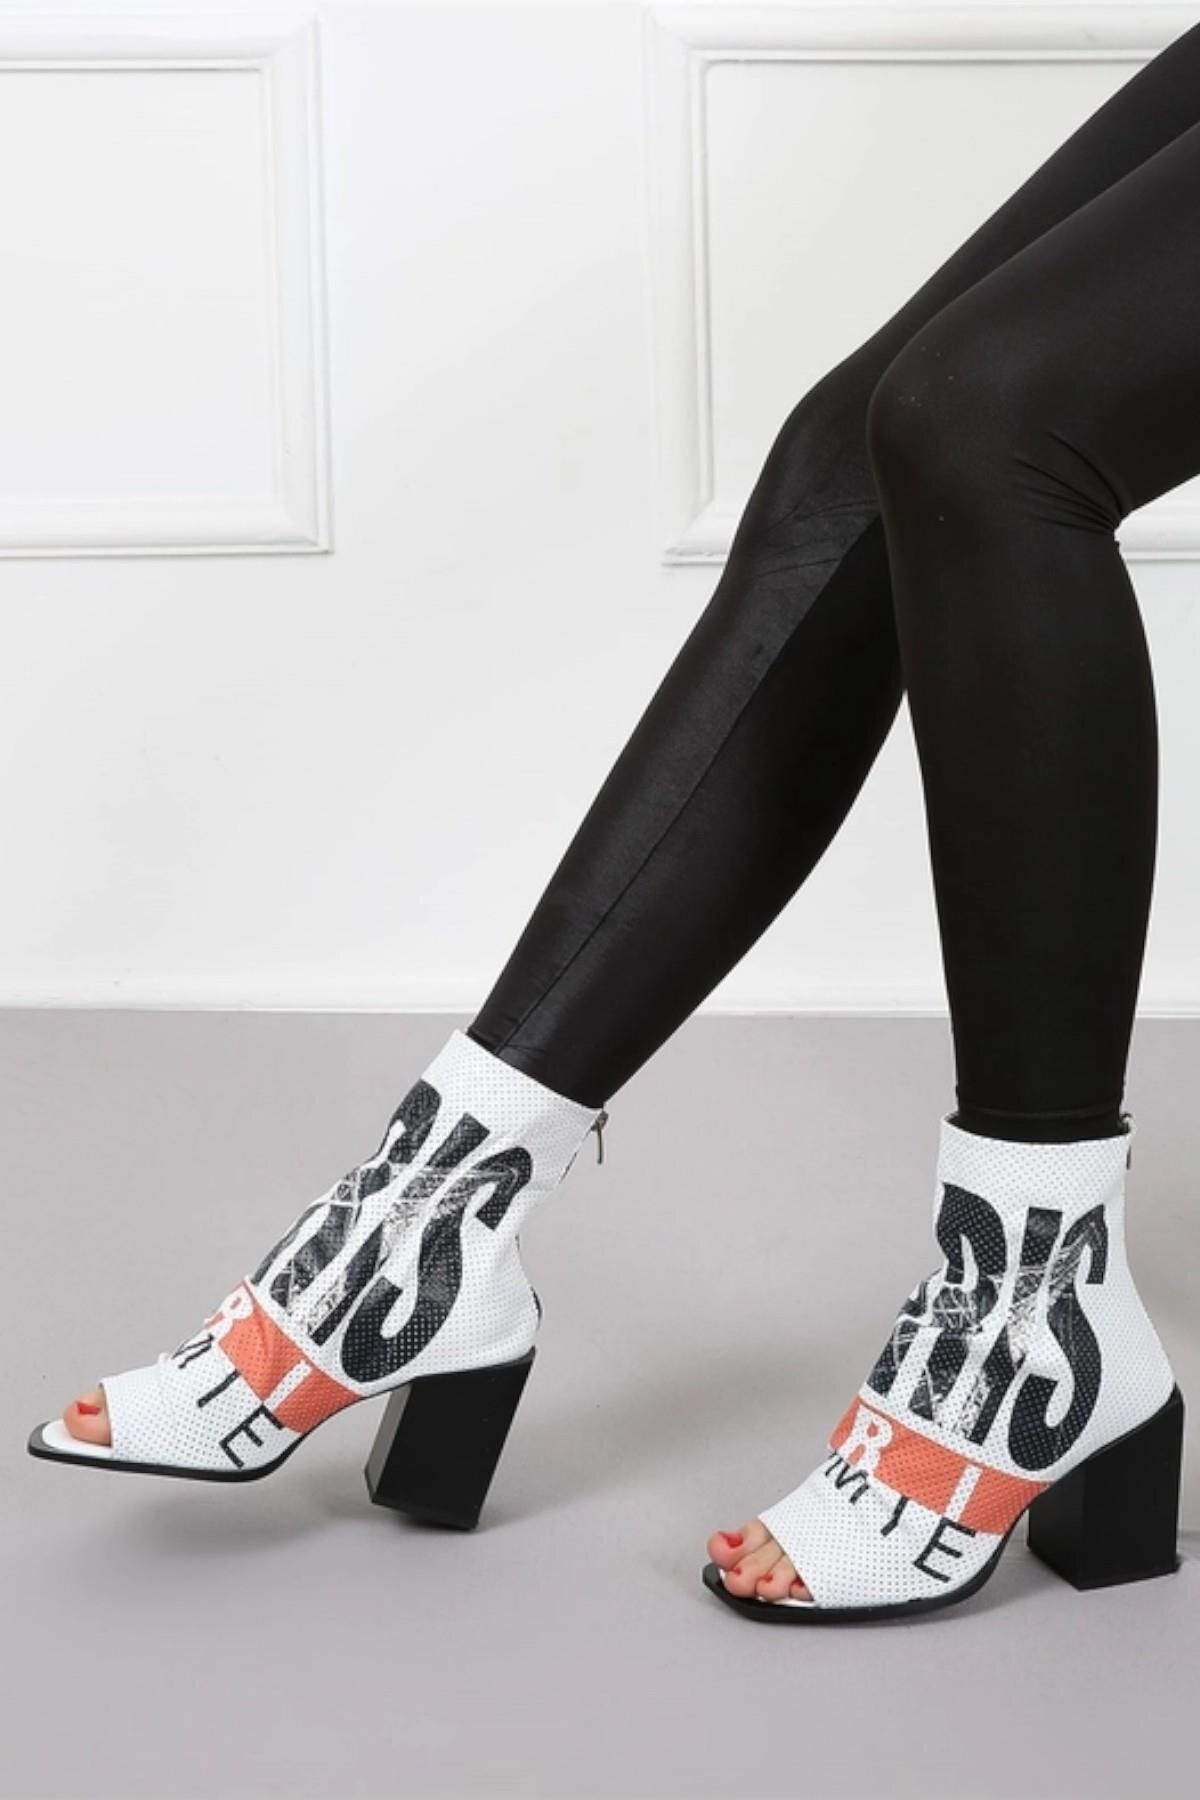 CassidoShoes Hakiki Deri Özel Tasarım Paris Beyaz Kadın Yaz Botu 002-3052